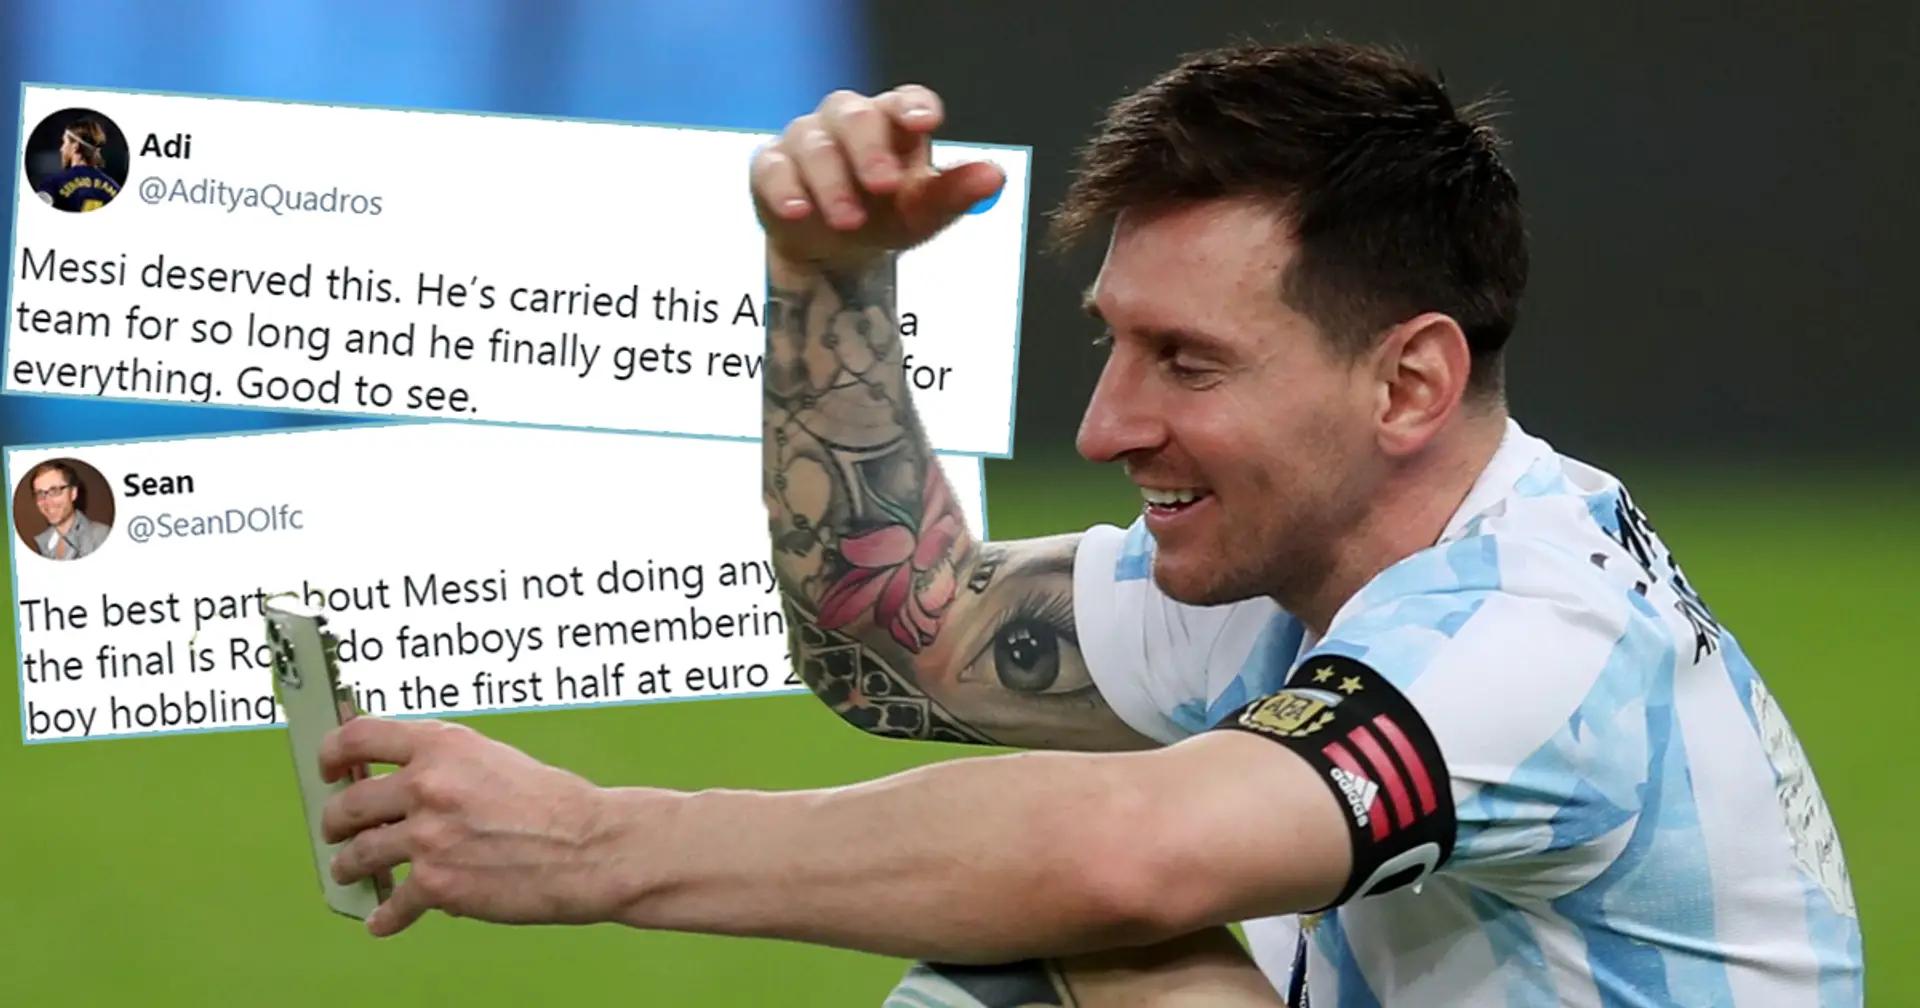 "Il obtient enfin ce qu'il mérite": les fans rivaux du Barça, y compris du PSG, réagissent à la victoire de Messi en Copa America